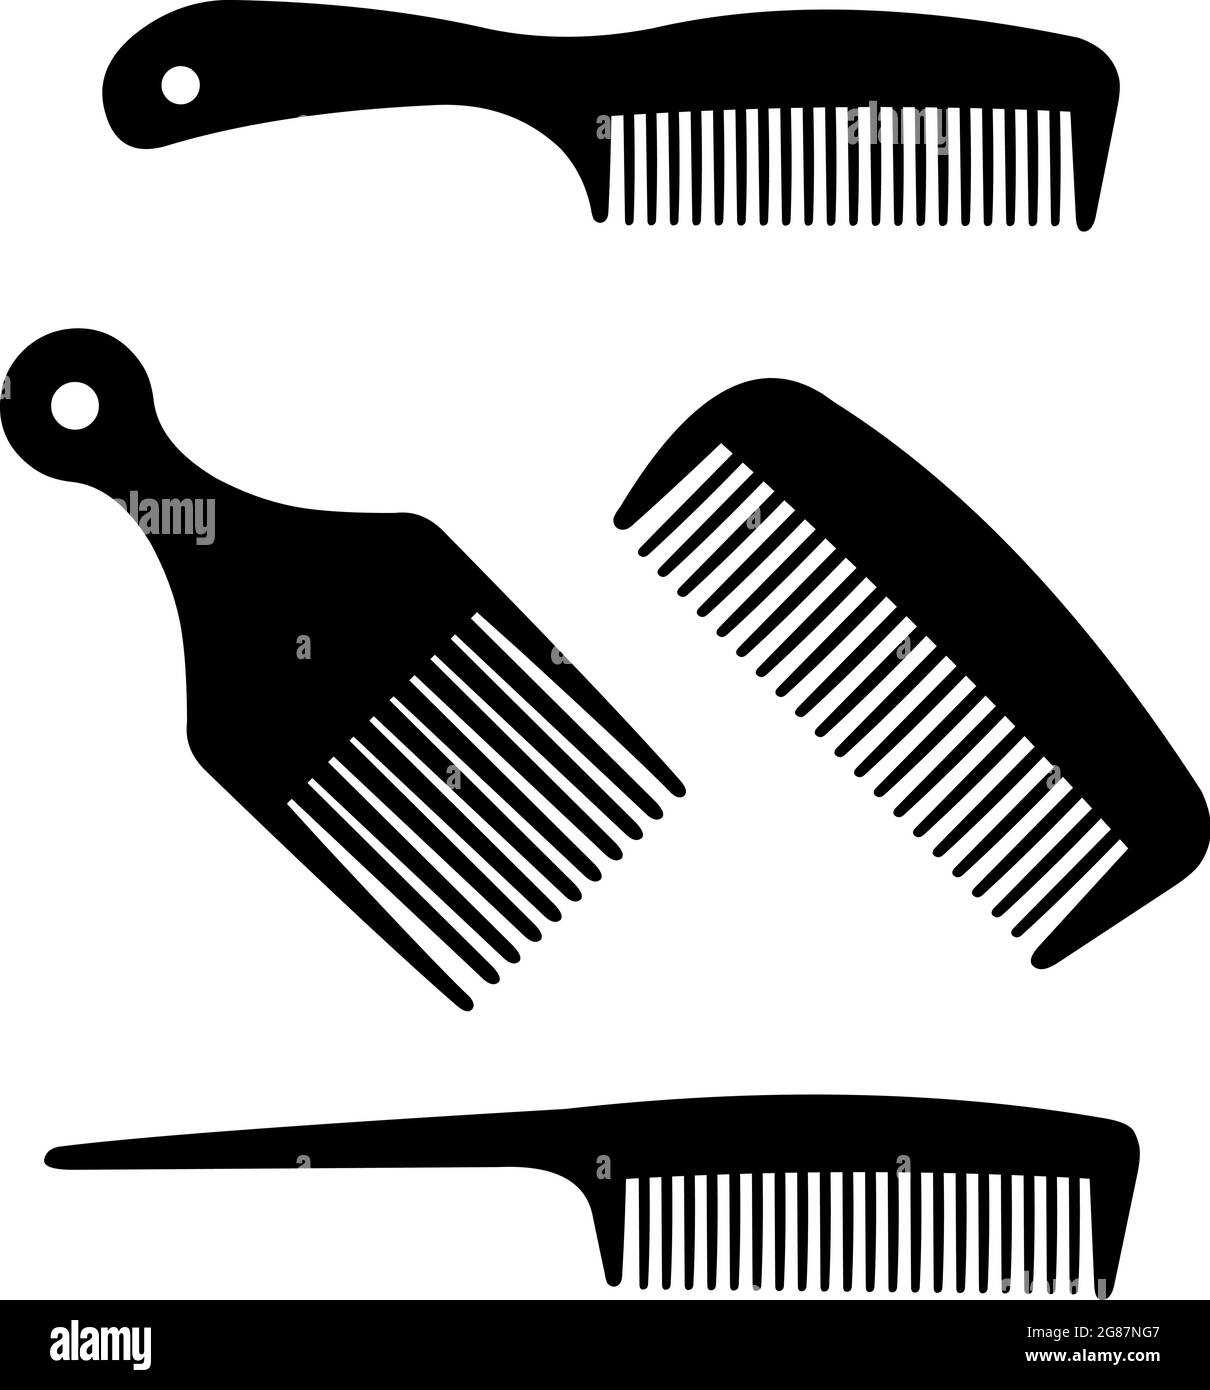 Illustrazione vettoriale di silhouette di diversi stili e forme di pettini per capelli Illustrazione Vettoriale